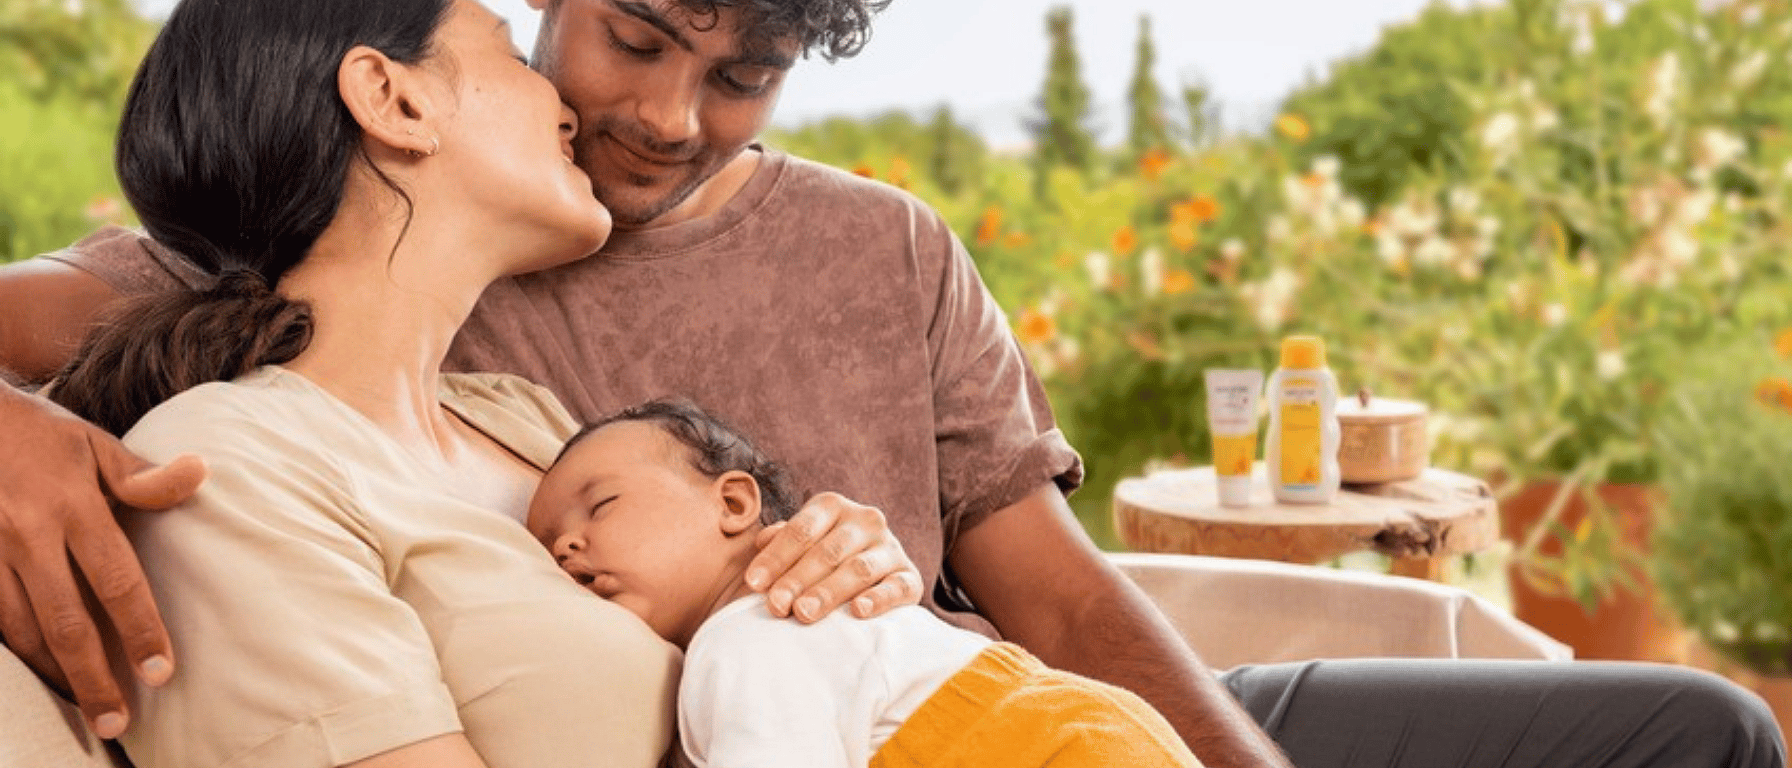 Elegir la Mejor Crema de Pañal - Los mejores consejos y recomendaciones  para tu bebe